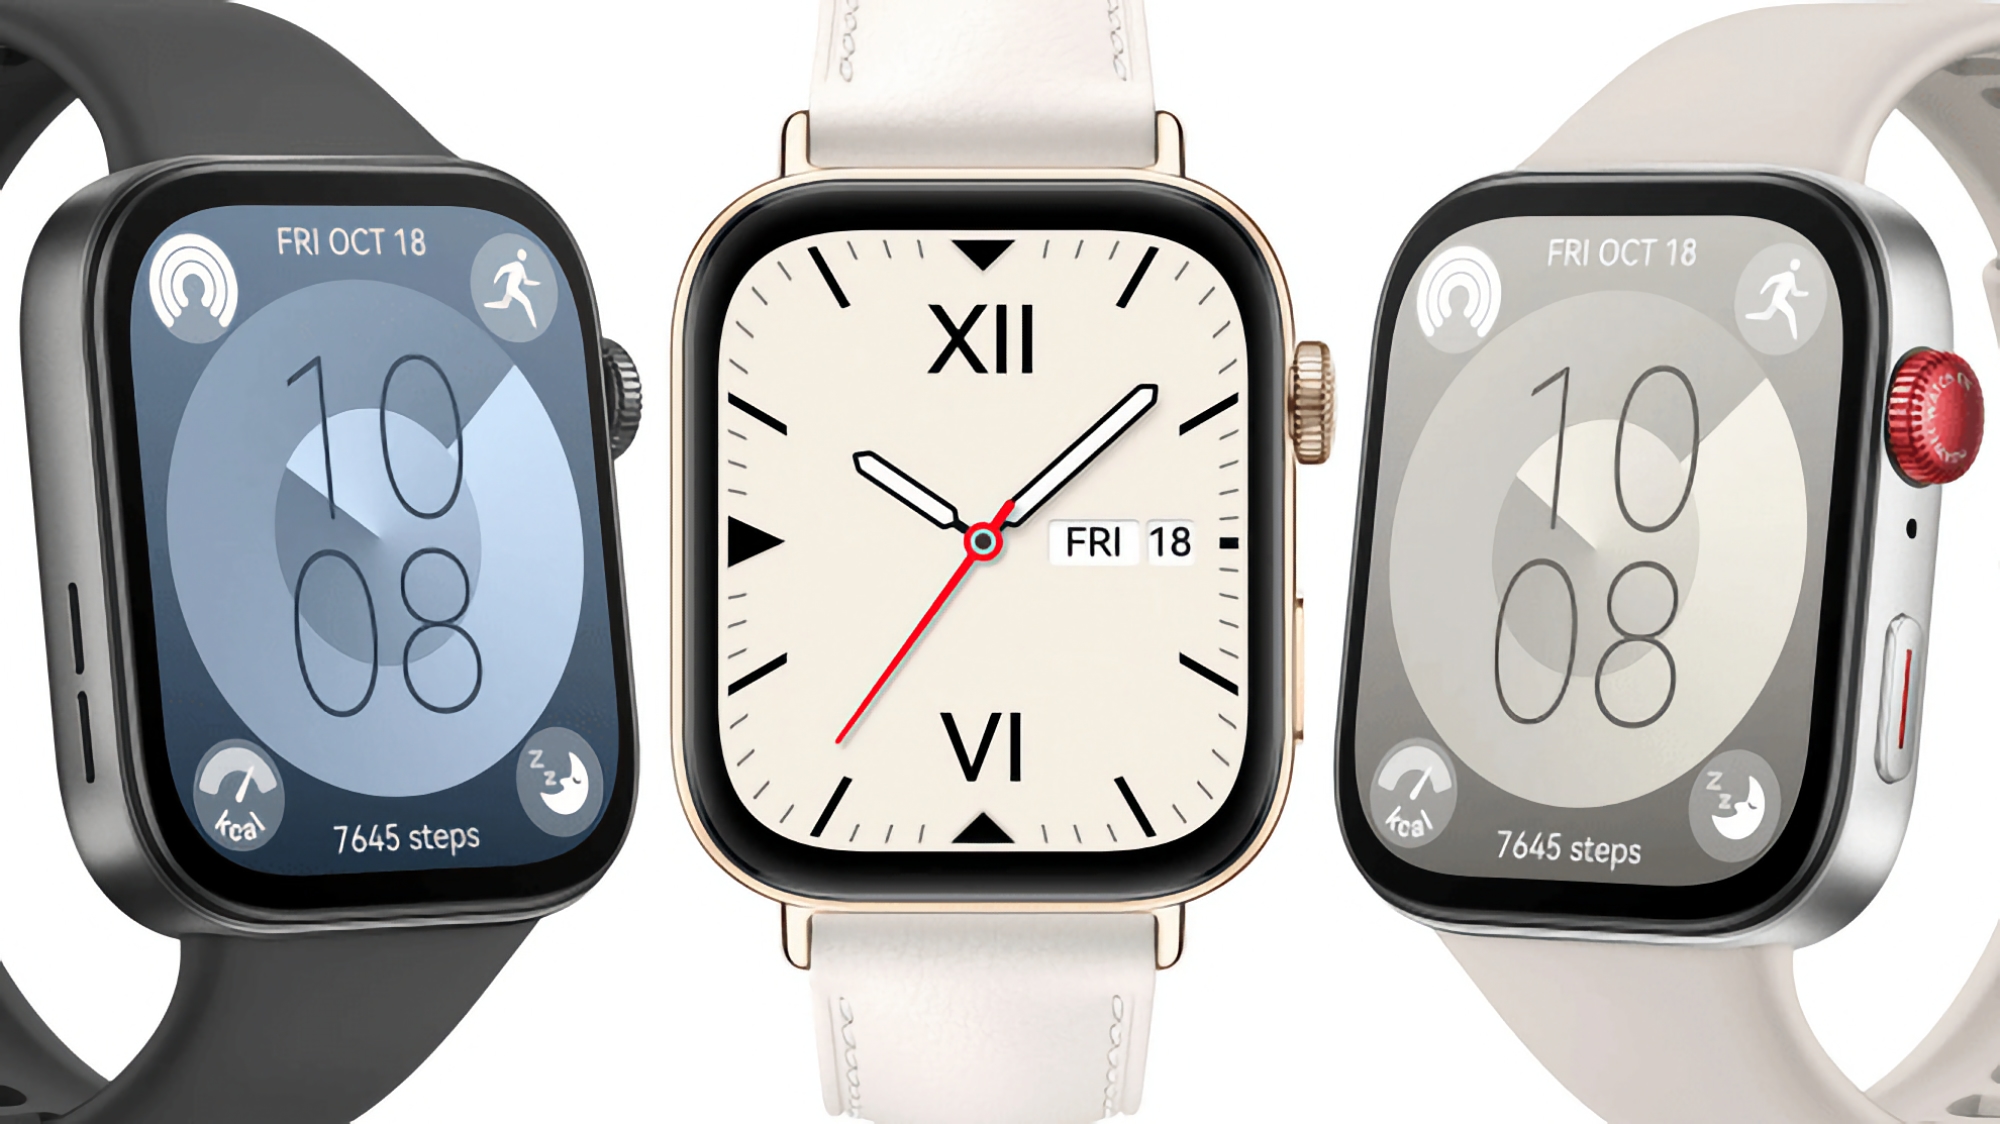 Trzy kolory, design w stylu Apple Watch, do 10 dni pracy na baterii i cena od 159 euro: osoba mająca dostęp do informacji poufnych ujawniła wszystkie szczegóły dotyczące Huawei Watch Fit 3